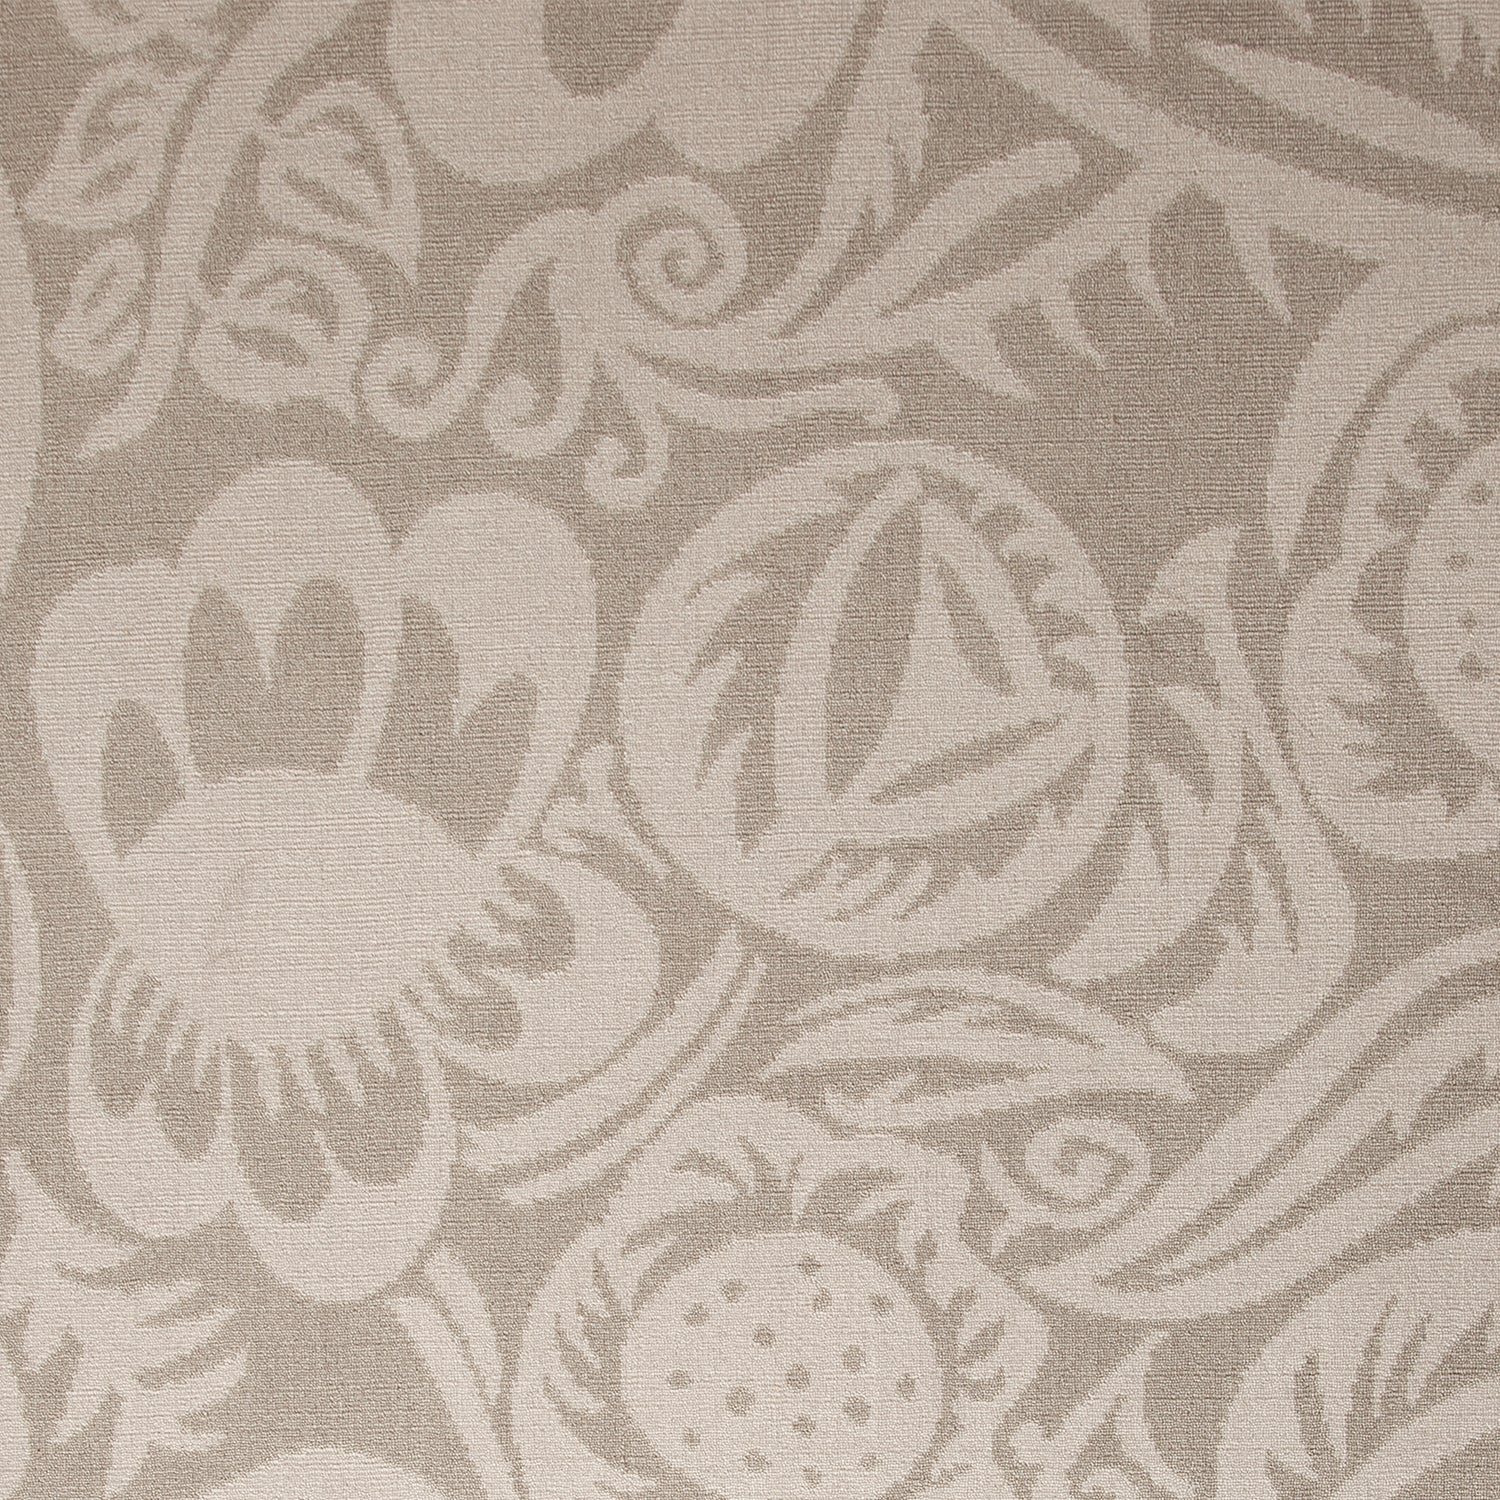 Wool-silk broadloom carpet swatch in a floral paisley pattern in light silver on a silver field.